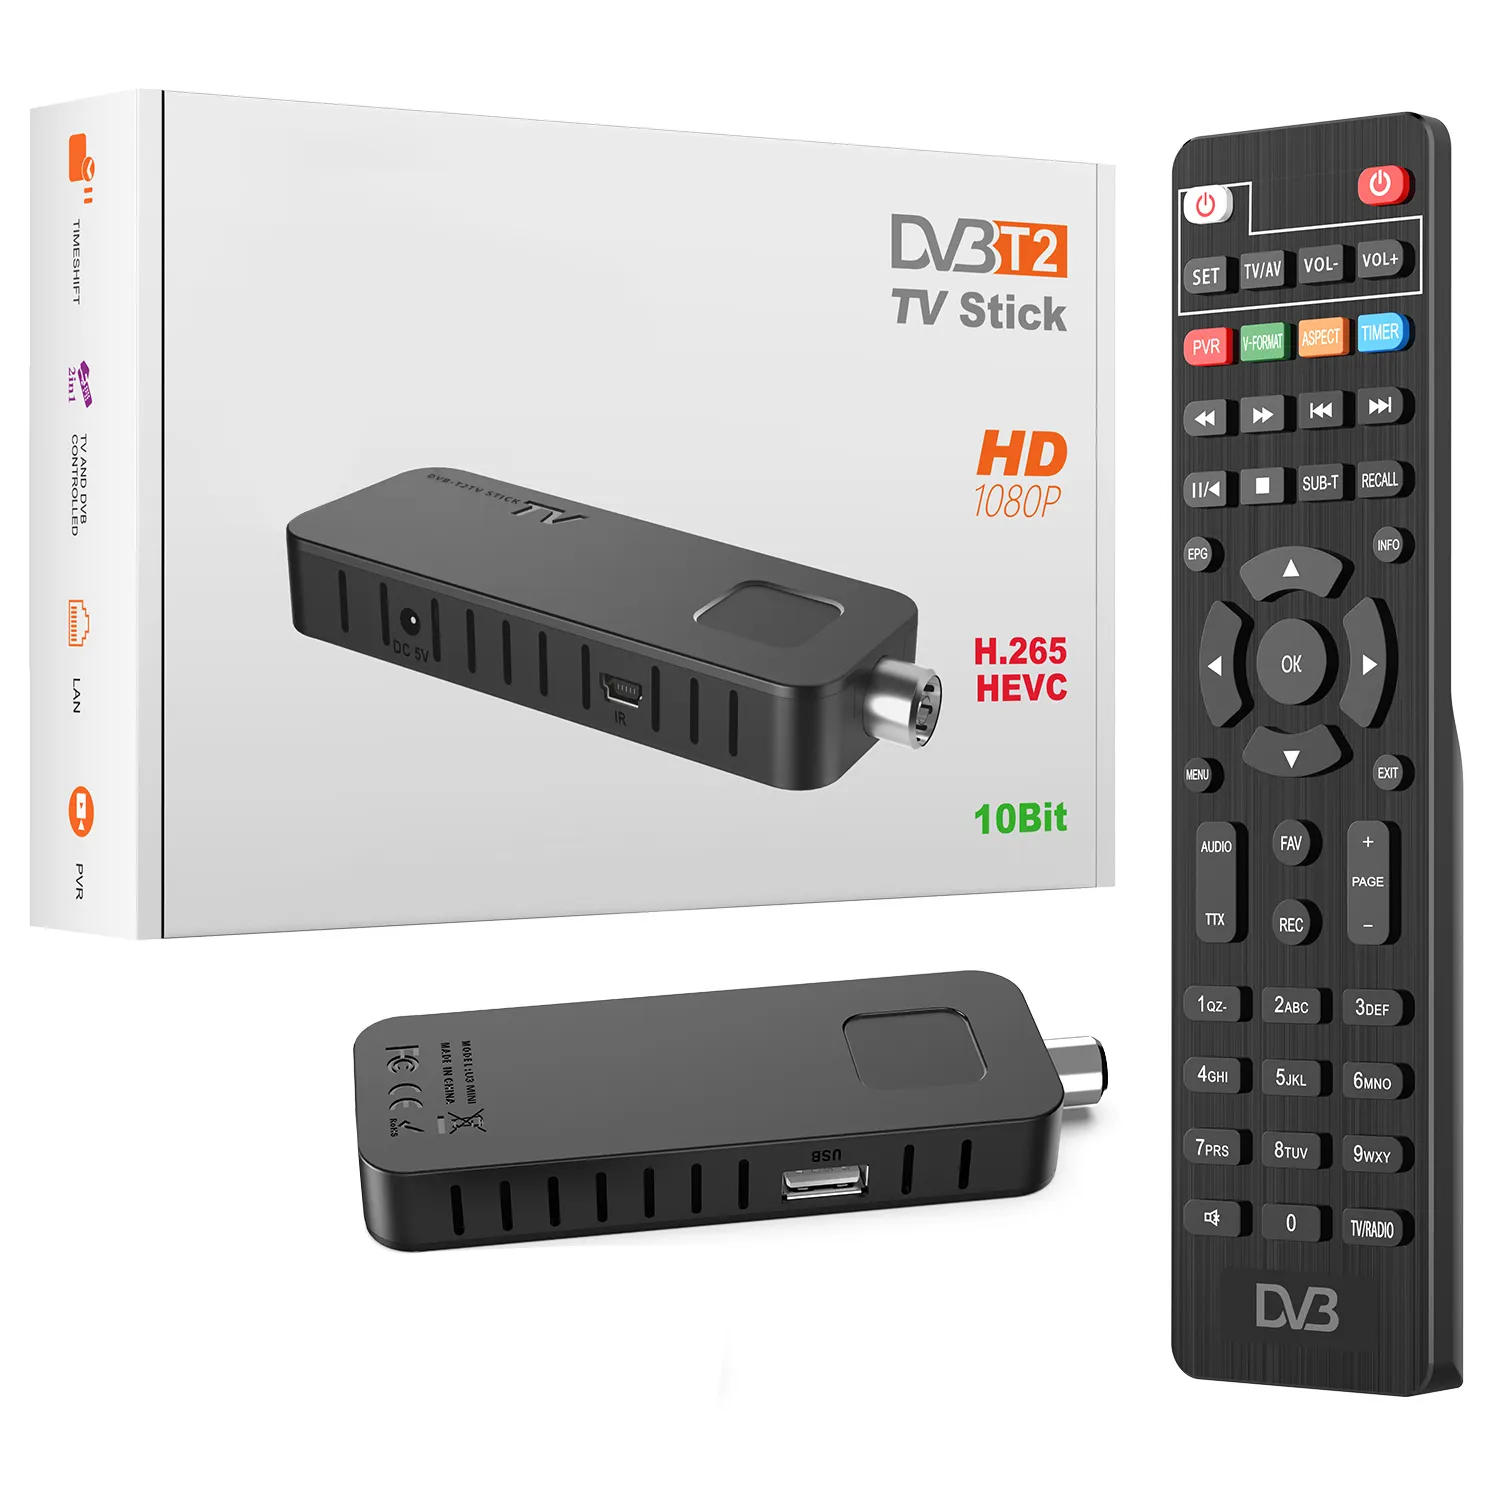 Decodificador más barato a precio de fábrica compatible con Wifi Megogo HDTV Fta Full Hd H265 Dvb T2 SINTONIZADOR DE Tv STB Scart TV BOX DE LA CAJA DE LA TV DE LA DVB-T2